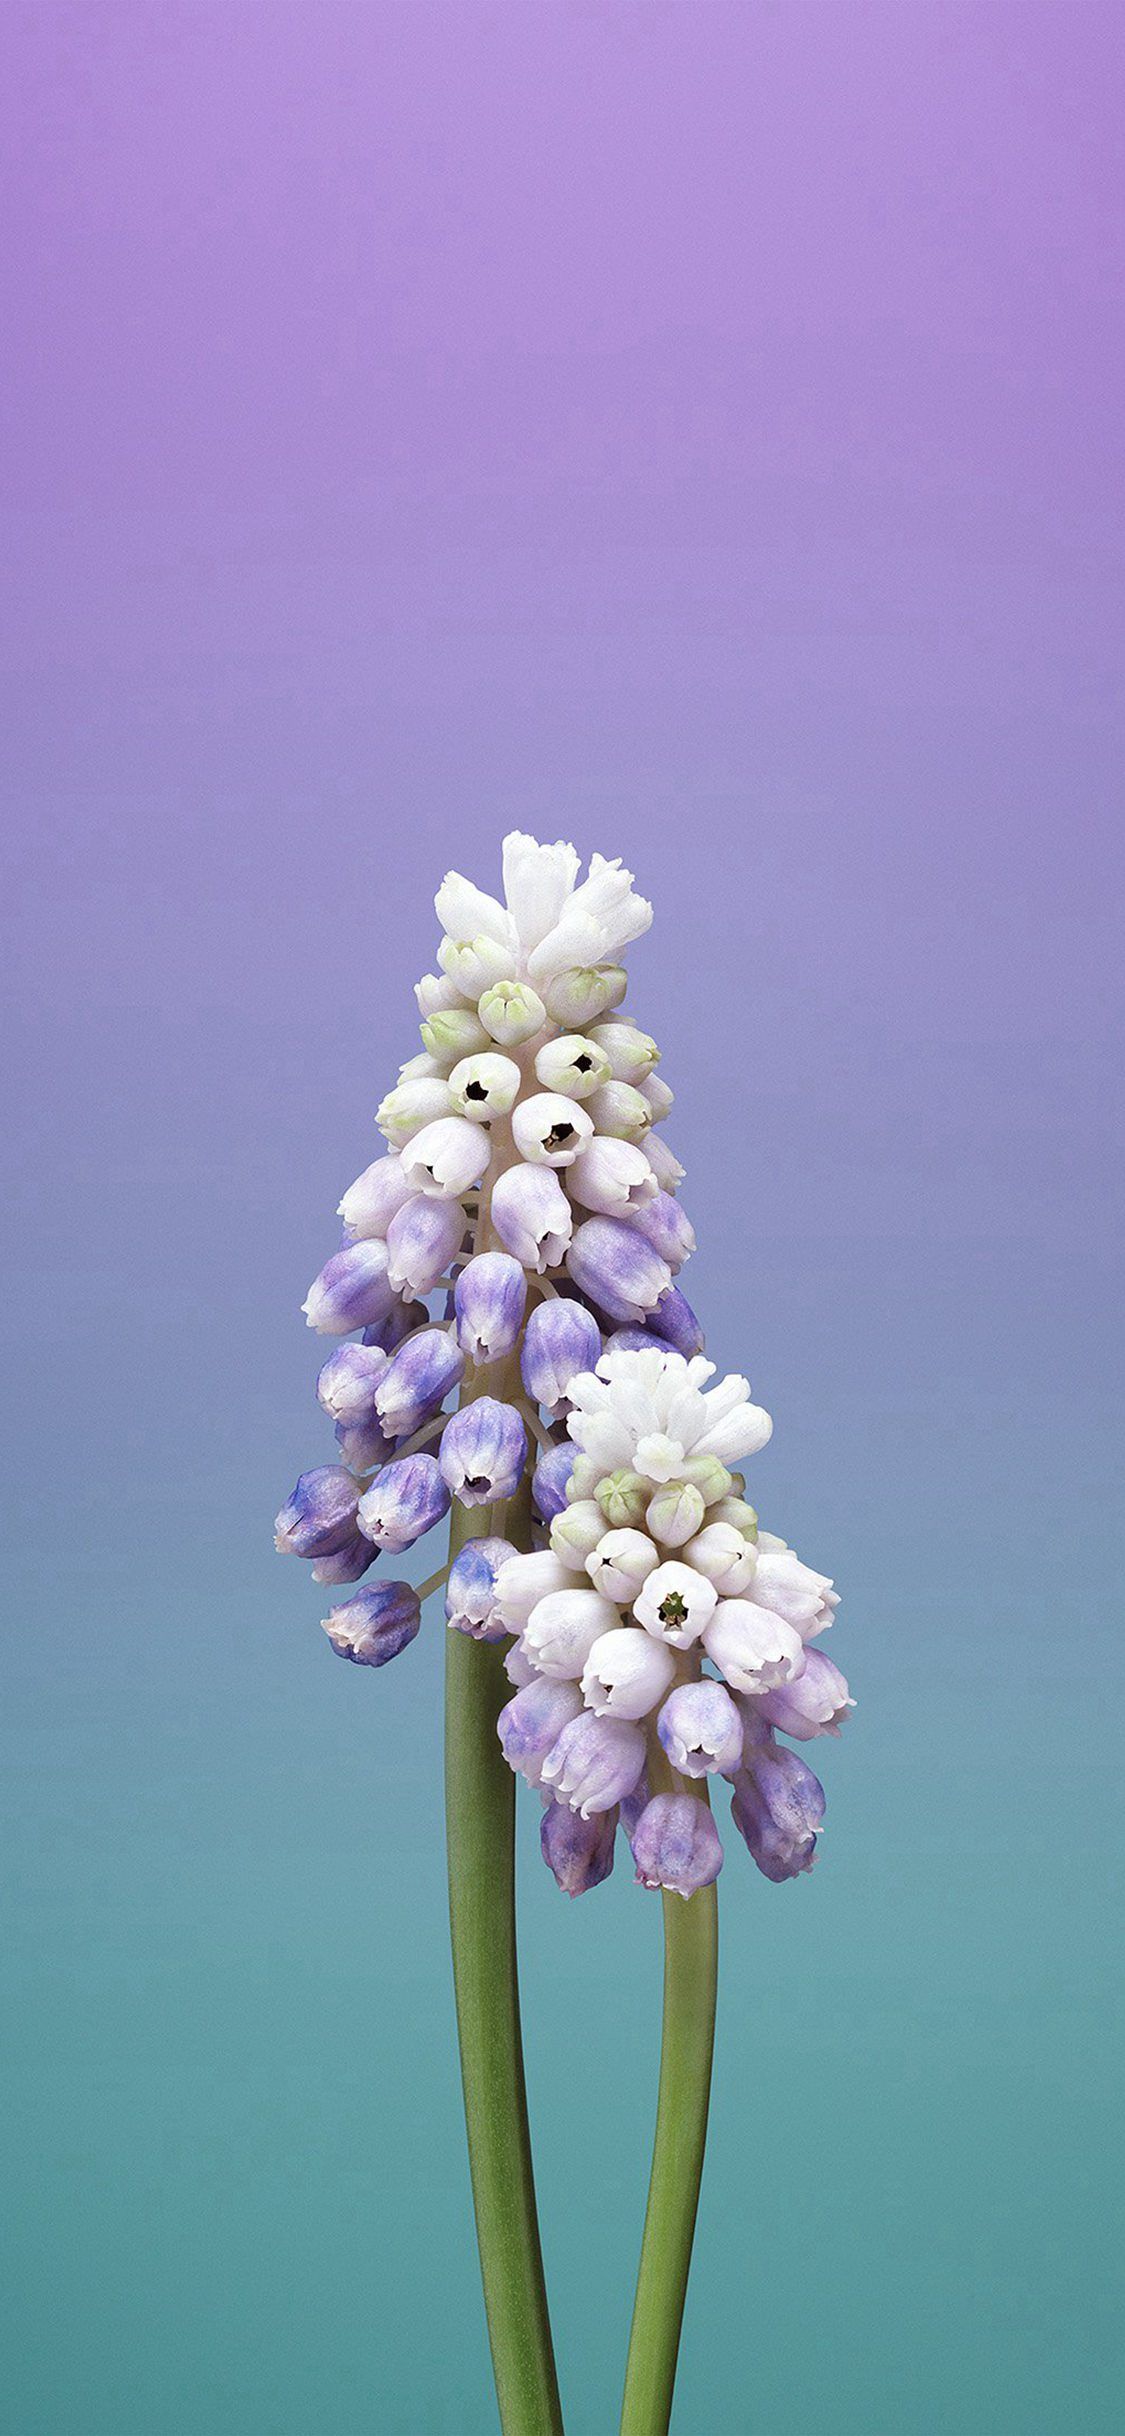 Hoa tím trên iPhone mang đến cho bạn một màu tím thật đẹp mắt và làm nổi bật chiếc điện thoại của bạn. Mỗi bông hoa đều mang lại một hương thơm khác nhau, một sự tươi mới và vẻ đẹp toát lên từ những cánh hoa. Hãy xem hình ảnh để tận hưởng sự kết hợp giữa chiếc điện thoại iPhone và hoa tím tuyệt vời này.